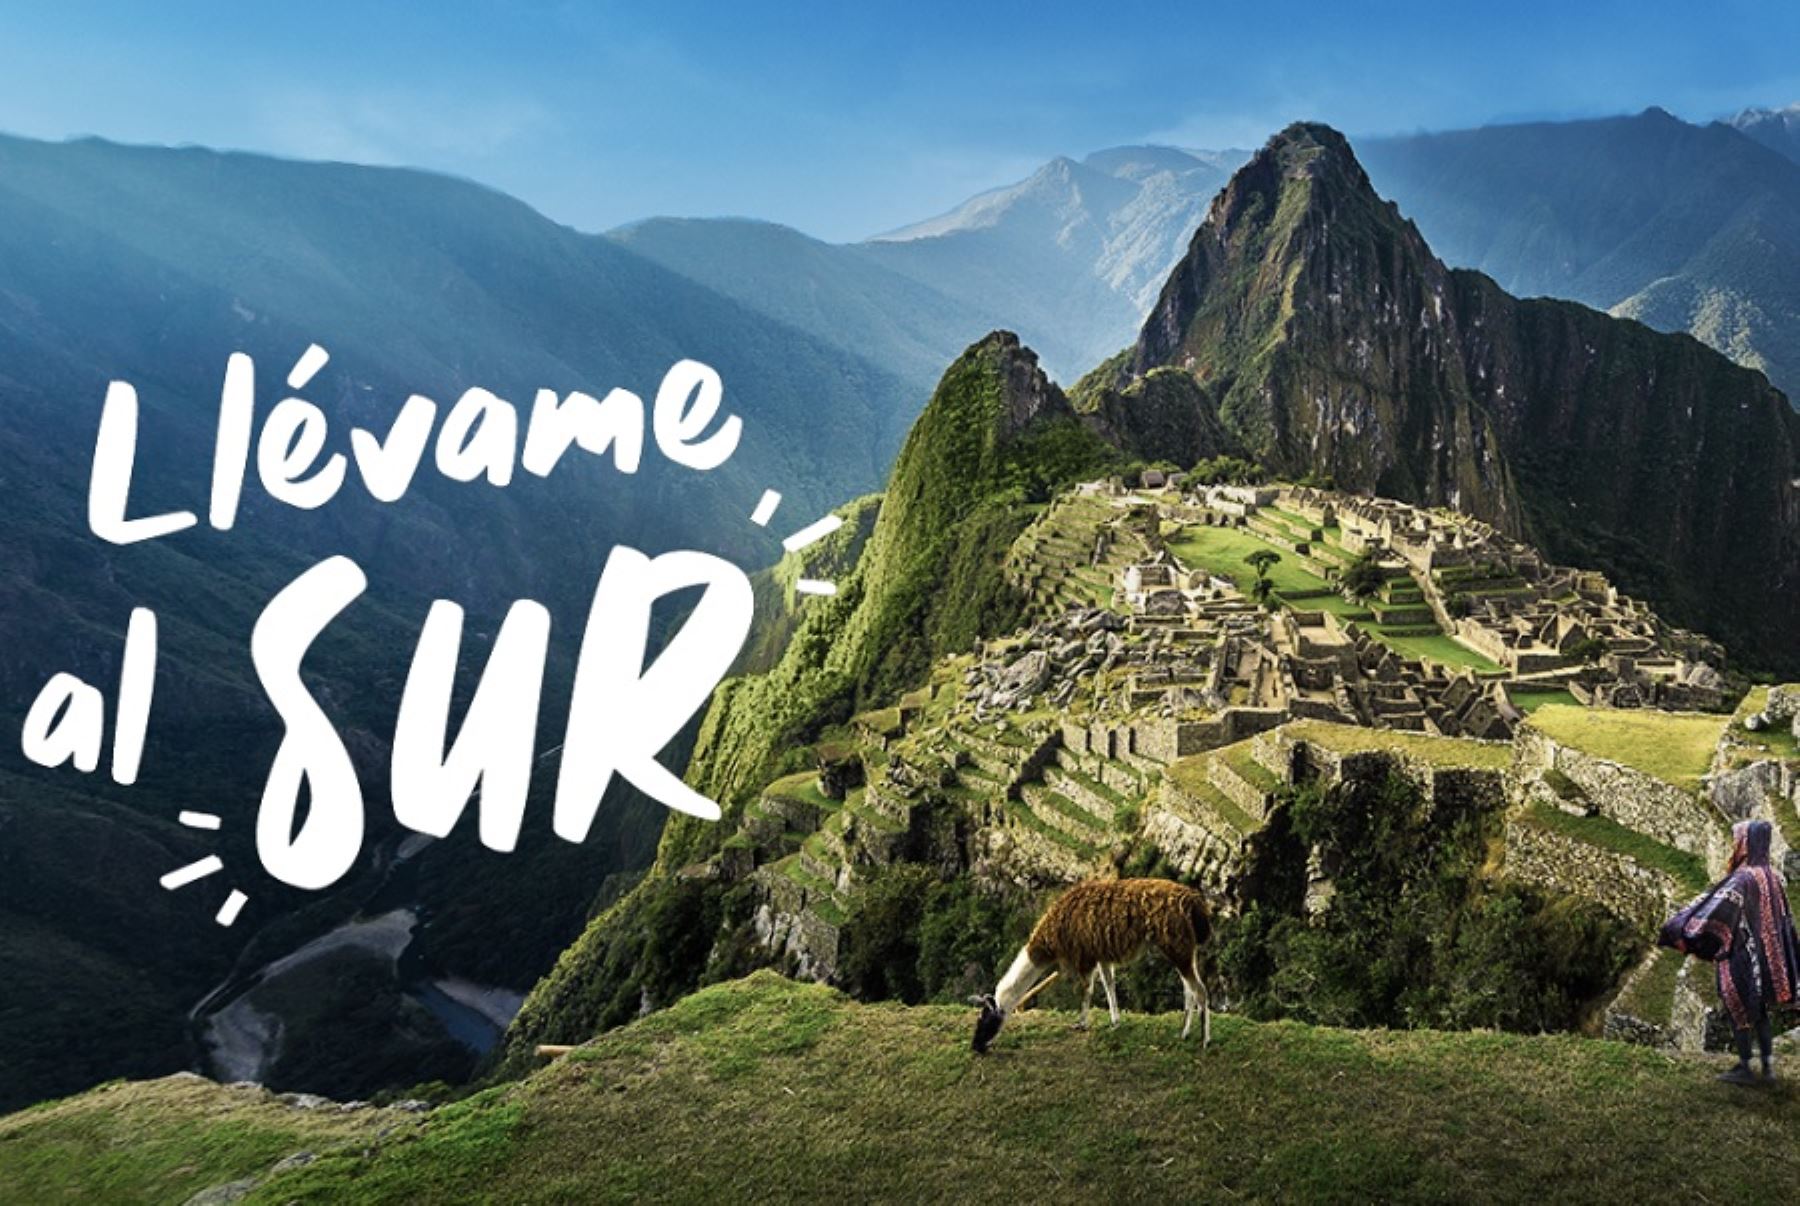 Con el propósito de impulsar la economía regional de Apurímac, Ayacucho, Arequipa, Cusco, Madre de Dios, Moquegua, Puno y Tacna, Promperú lanzó la campaña “Llévame al Sur”.